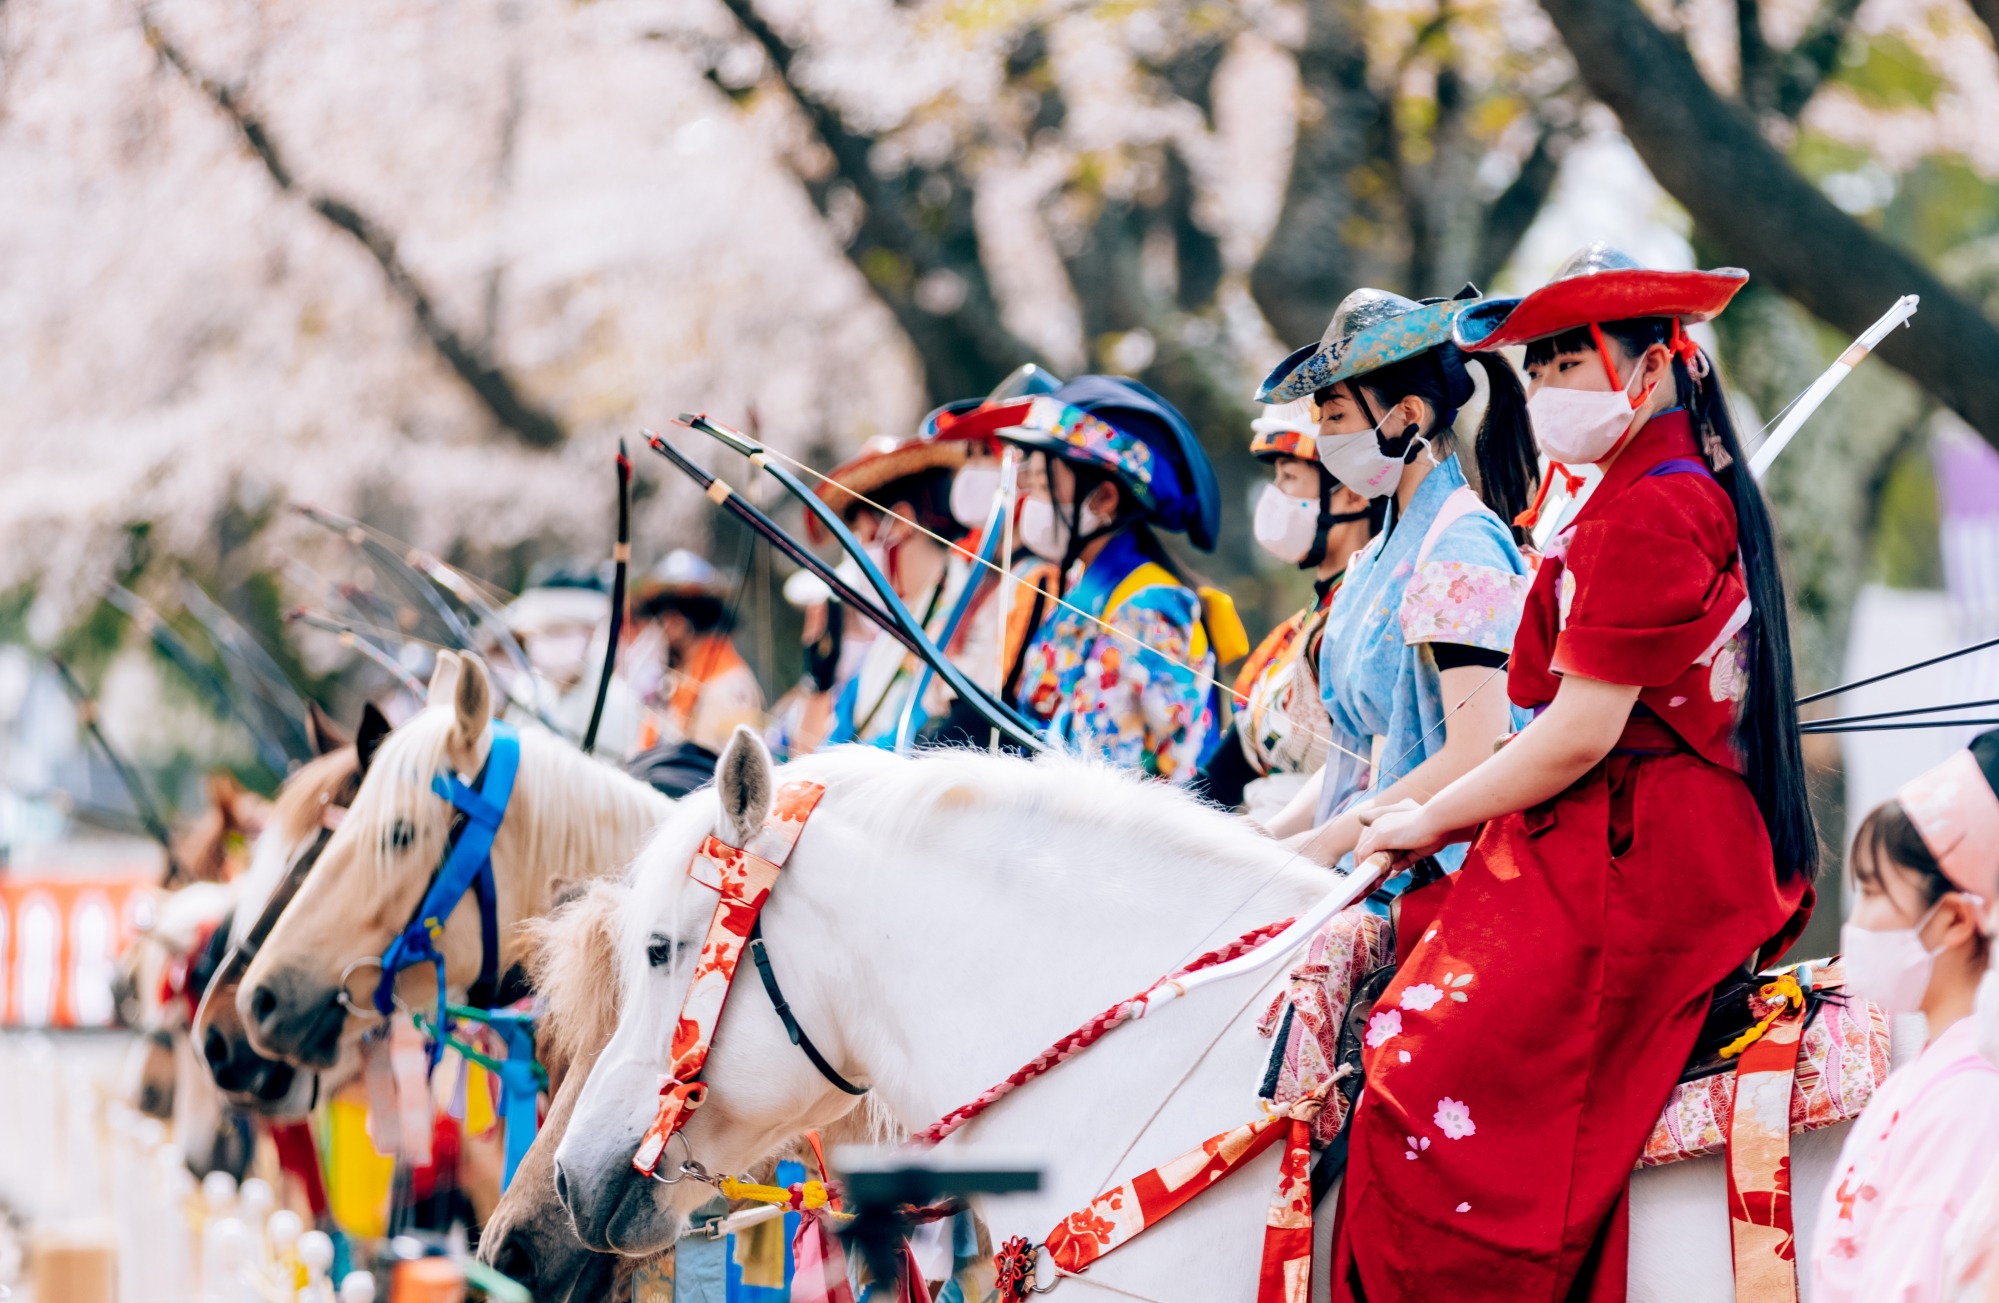 桜並木と日本の伝統馬術武芸「流鏑馬」の癒合。勇壮華麗な絶景がここに。